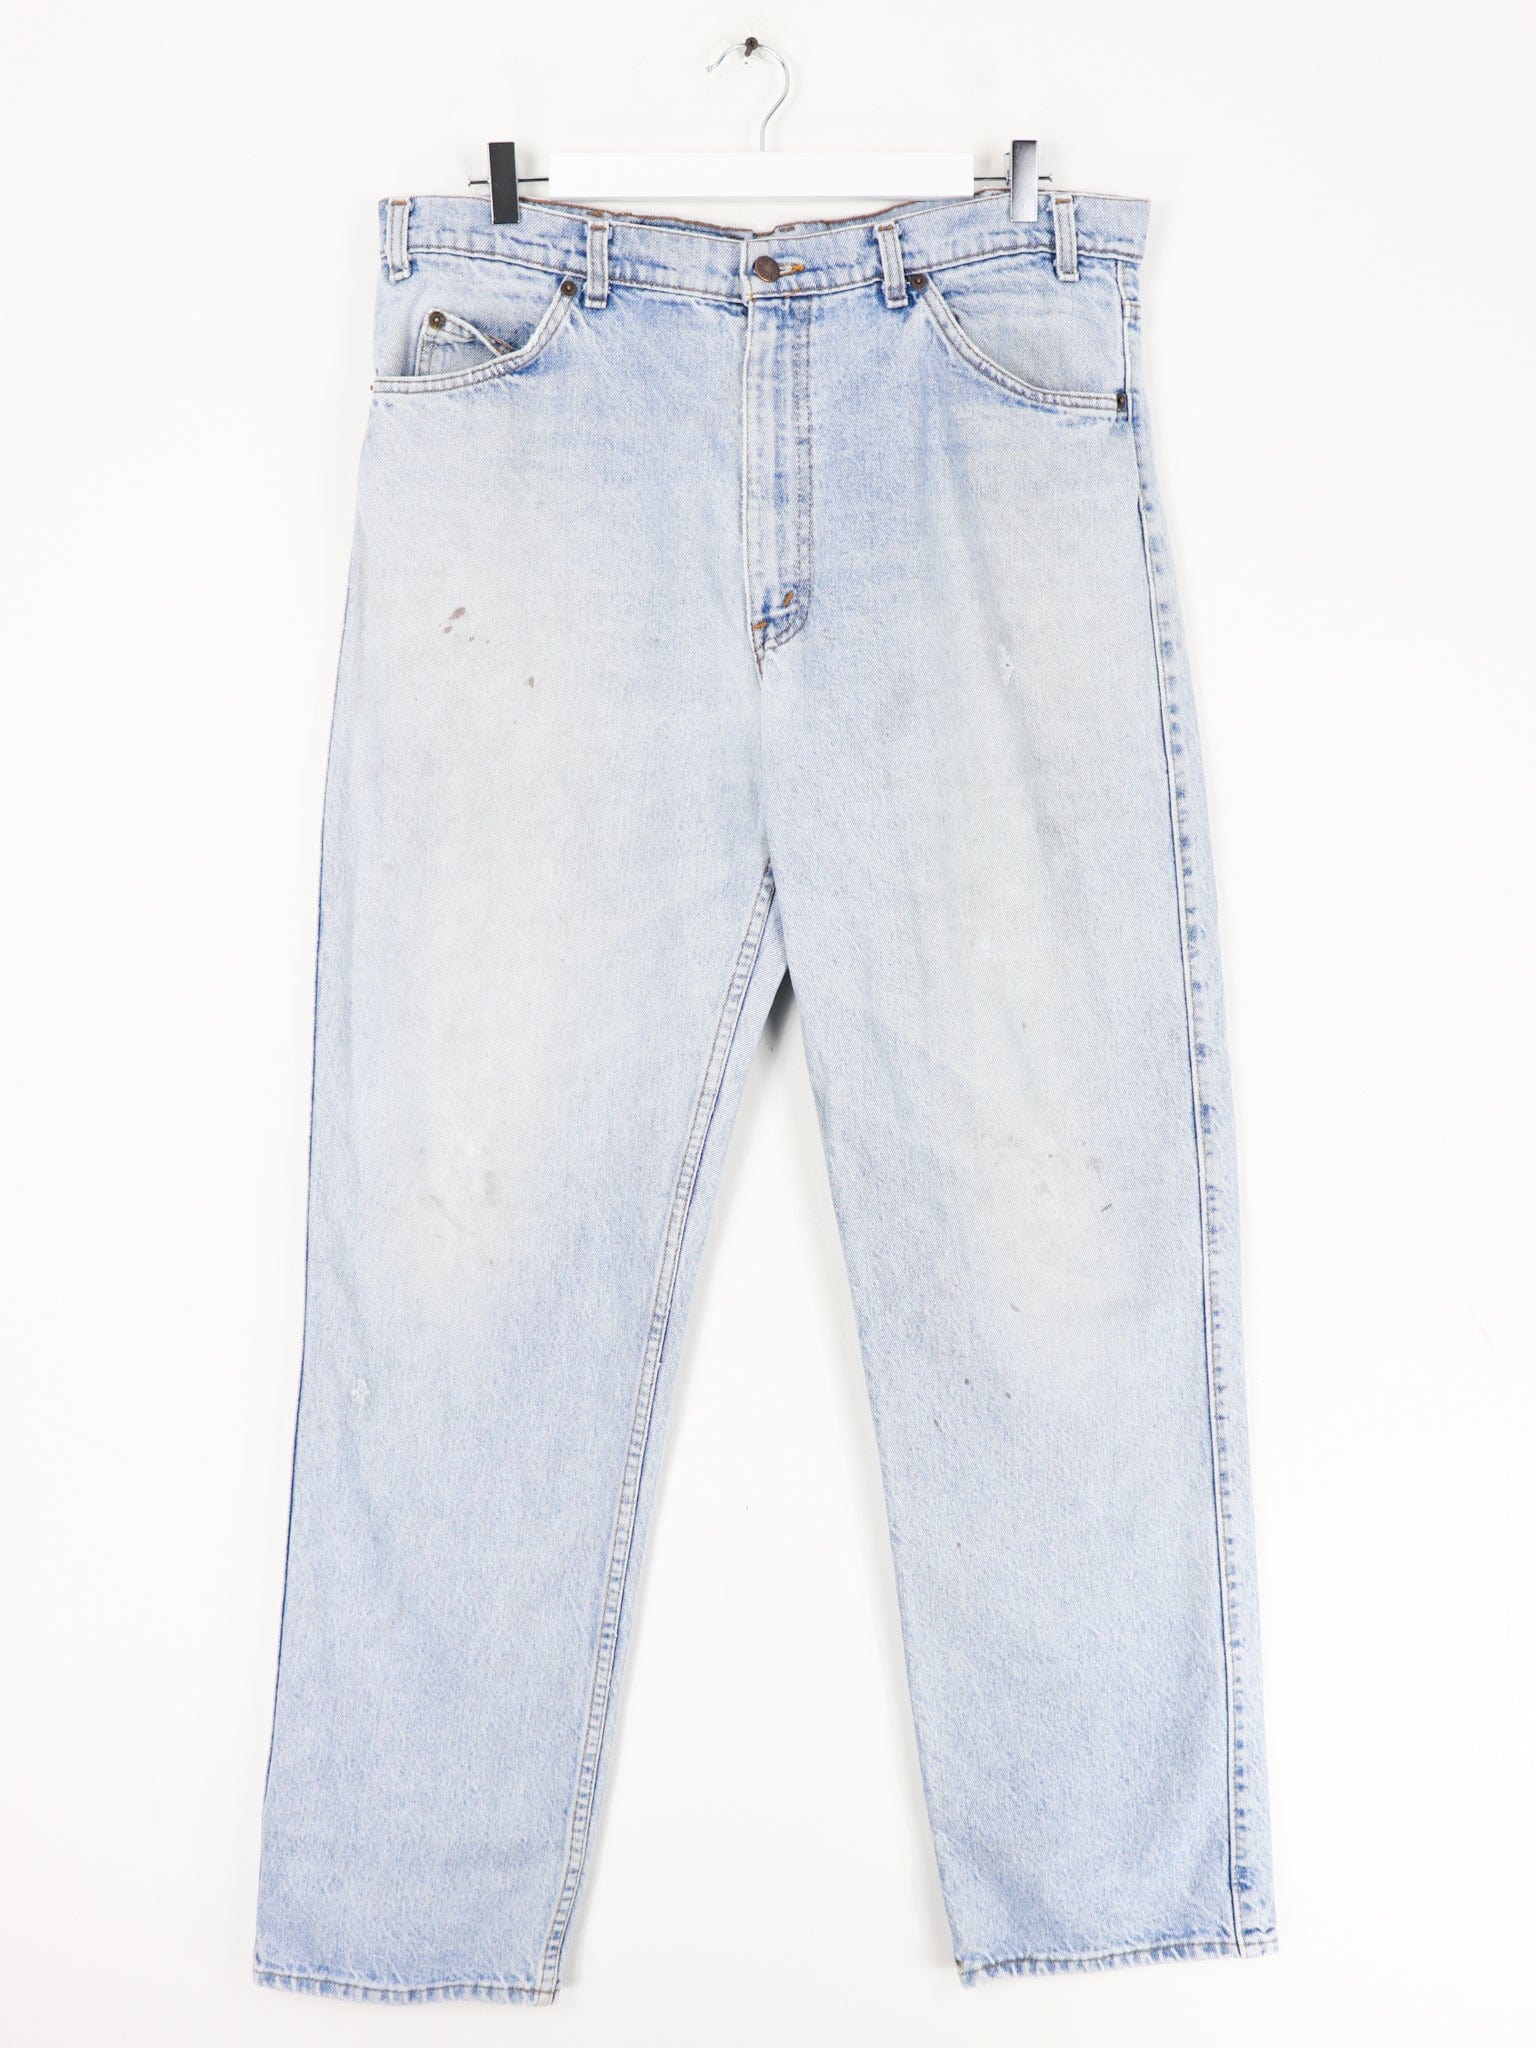 Vintage Levi's 549 Low Loose Fit Denim Jeans Size 38 x 34